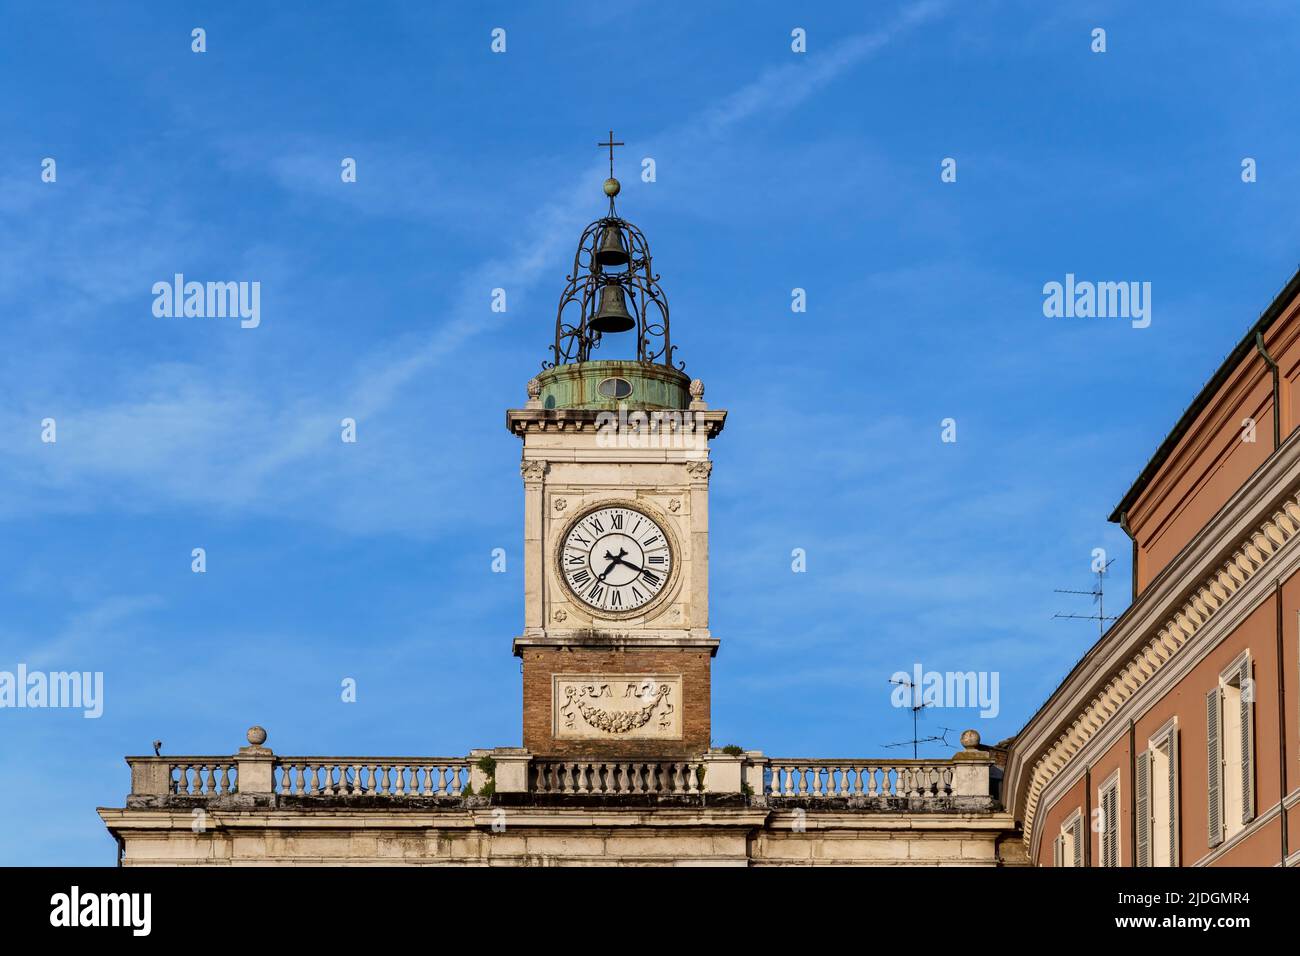 Alte Glocke und Uhrenturm auf der Piazza Del Popolo. Ravenna, Emilia Romagna, Italien, Europa, Europäische Union, EU. Blauer Himmel, Kopierbereich. Stockfoto